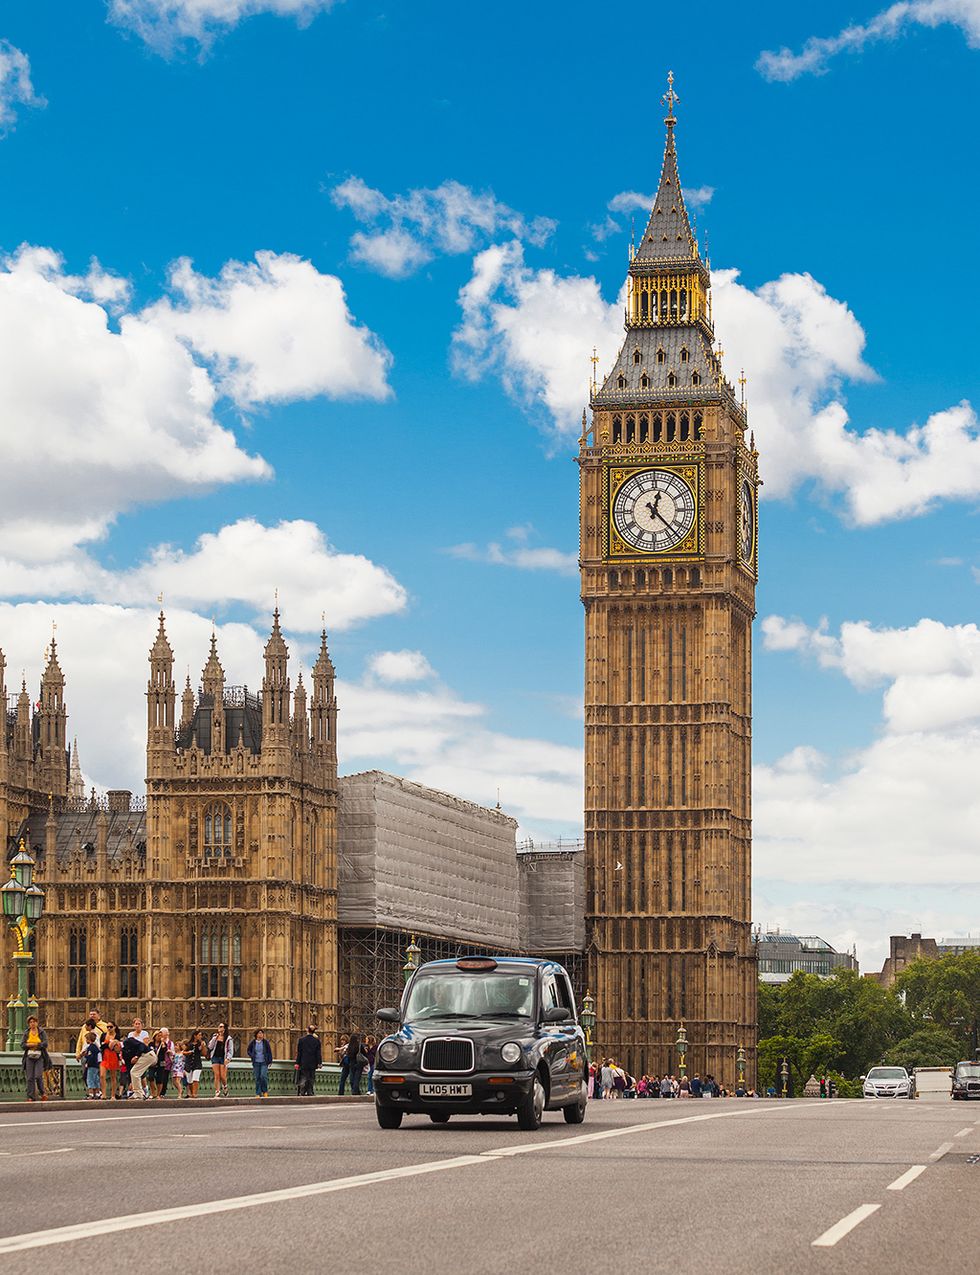 <p>El error habitual es llamar ‘Big Ben’ a la torre, cuando en realidad es solo la enorme campana del reloj que marca puntualmente las horas. La torre de Westminster, sede del Parlamento Británico, se llamó Clock Tower hasta 2012, año en que, por el jubileo de la reina, pasó a denominarse Elizabeth Tower. La campana data de 1859 y el conjunto, sin duda, es el monumento londinense por excelencia.&nbsp;</p><p>&nbsp;</p>